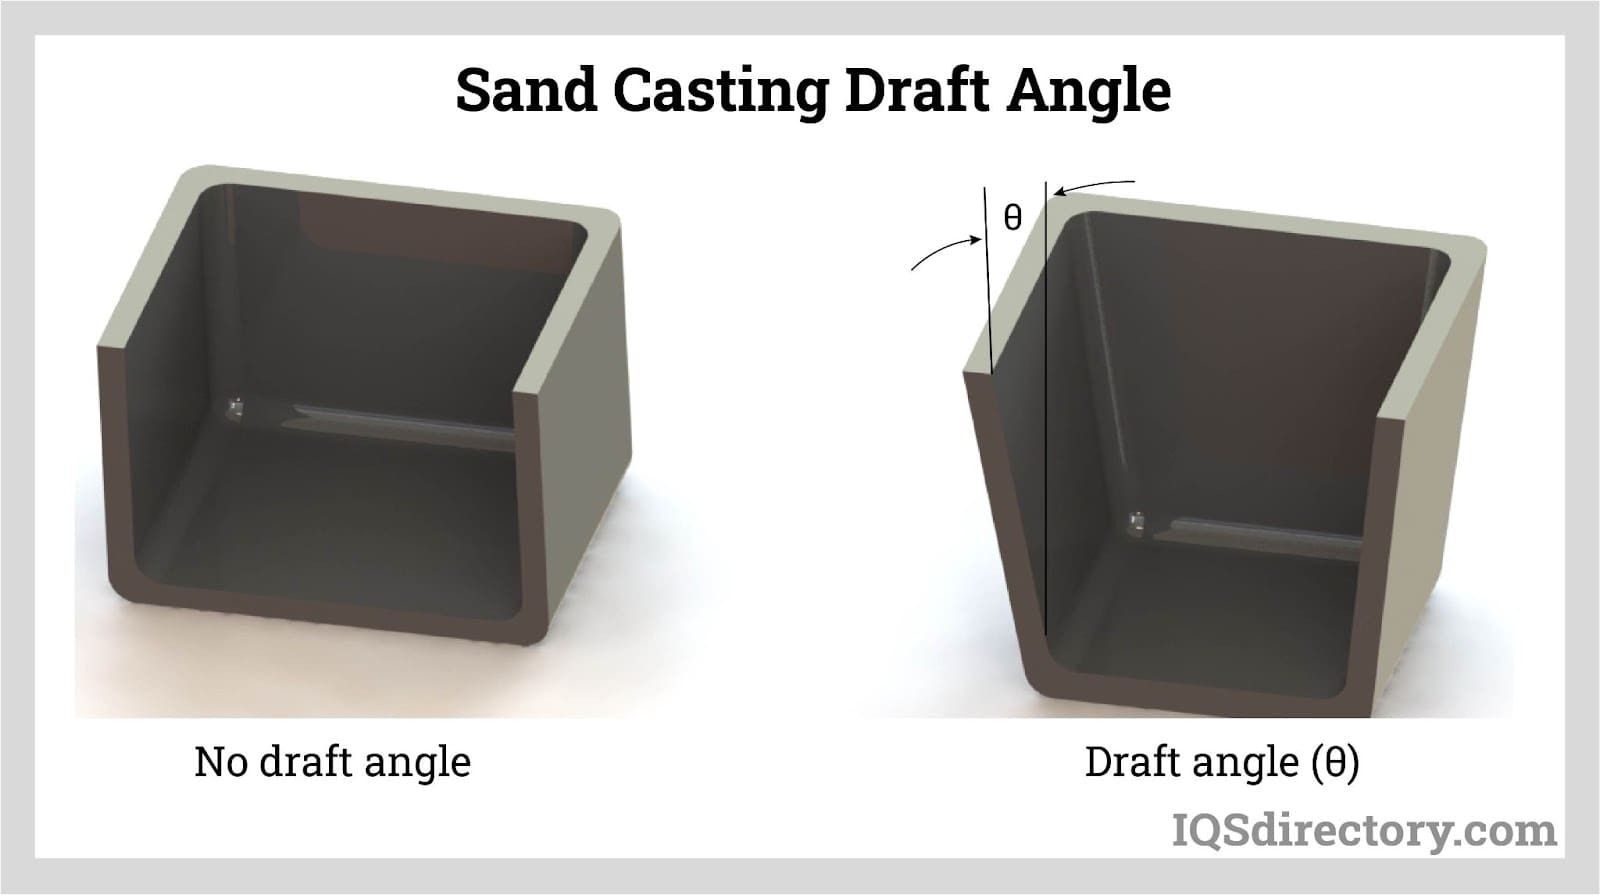 Sand Casting Draft Angle